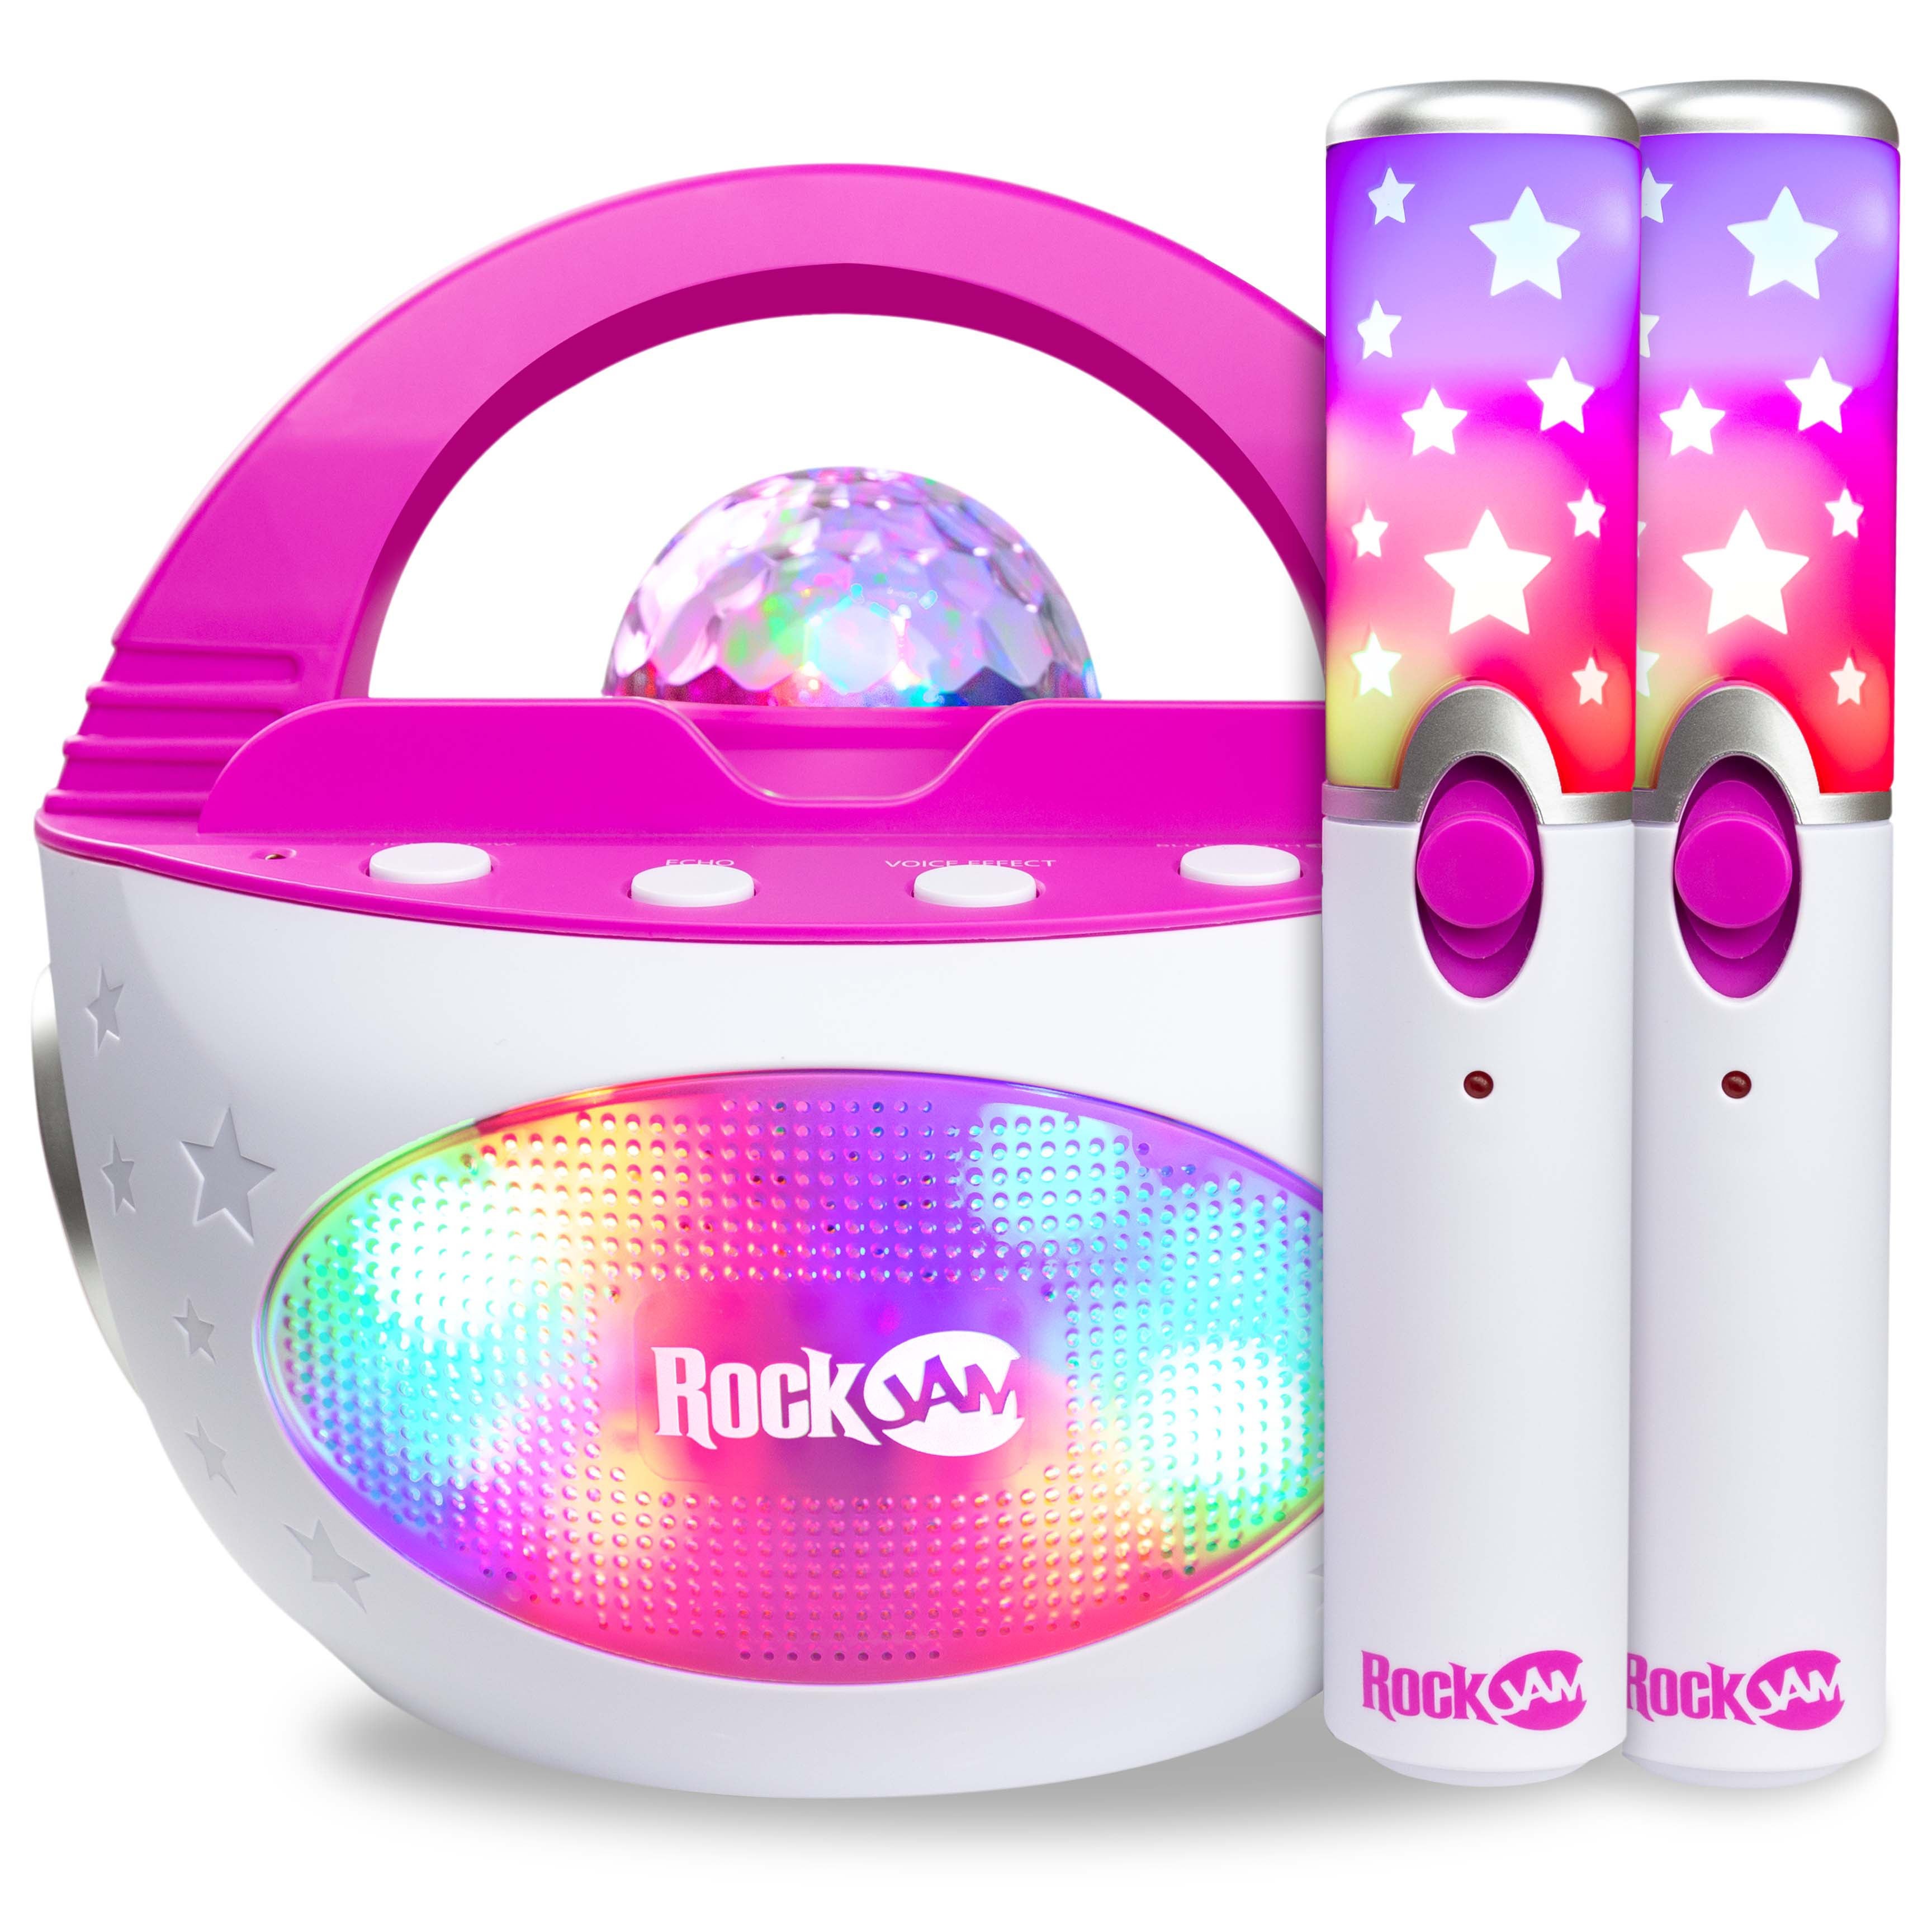 K-POP DUO Portable Karaoke Machine w/ Two Wireless Microphones Pink